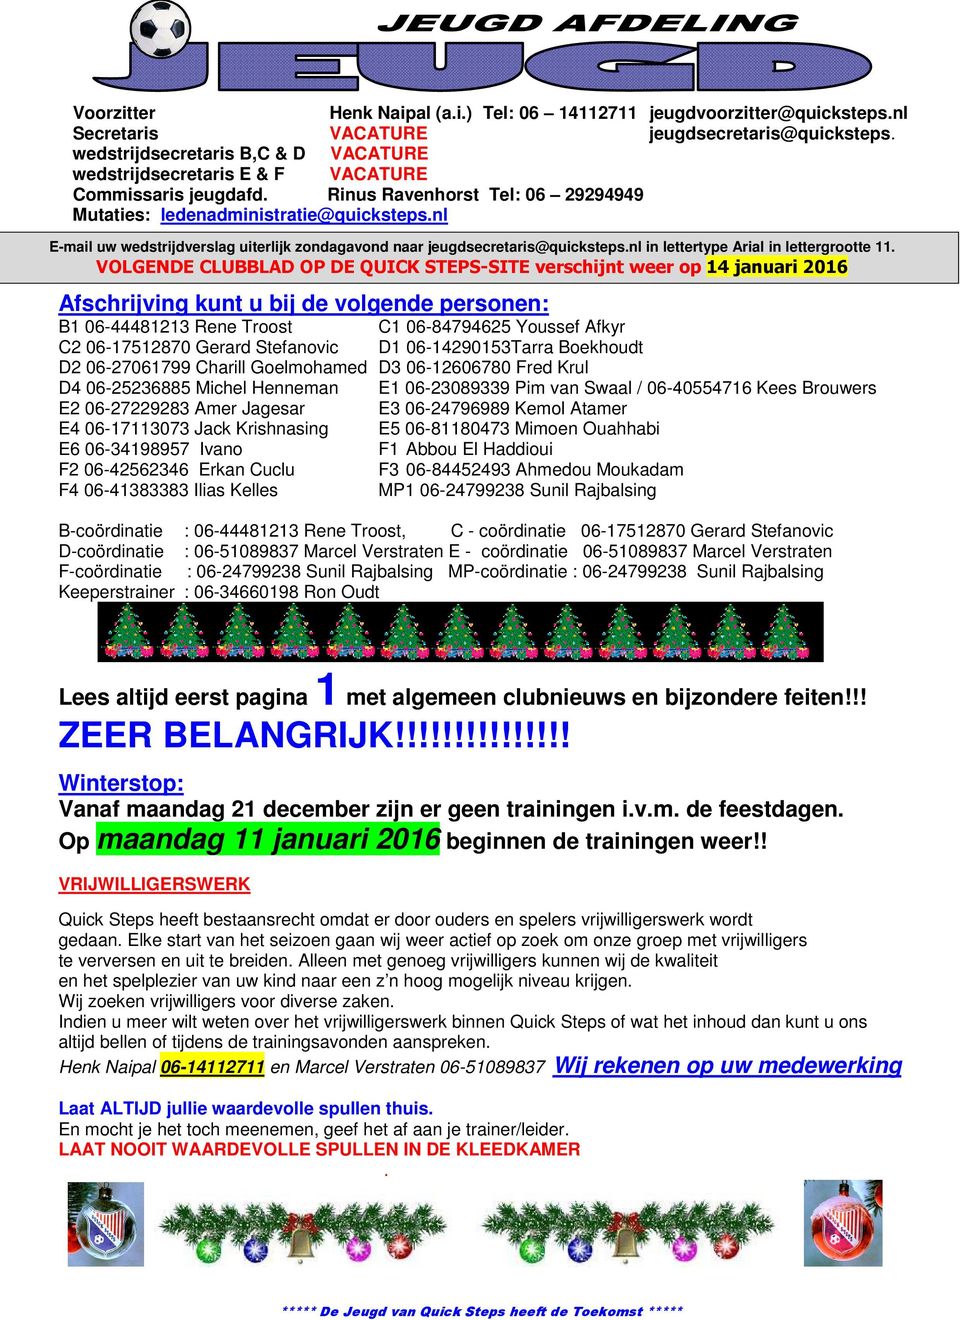 nl E-mail uw wedstrijdverslag uiterlijk zondagavond naar jeugdsecretaris@quicksteps.nl in lettertype Arial in lettergrootte 11.